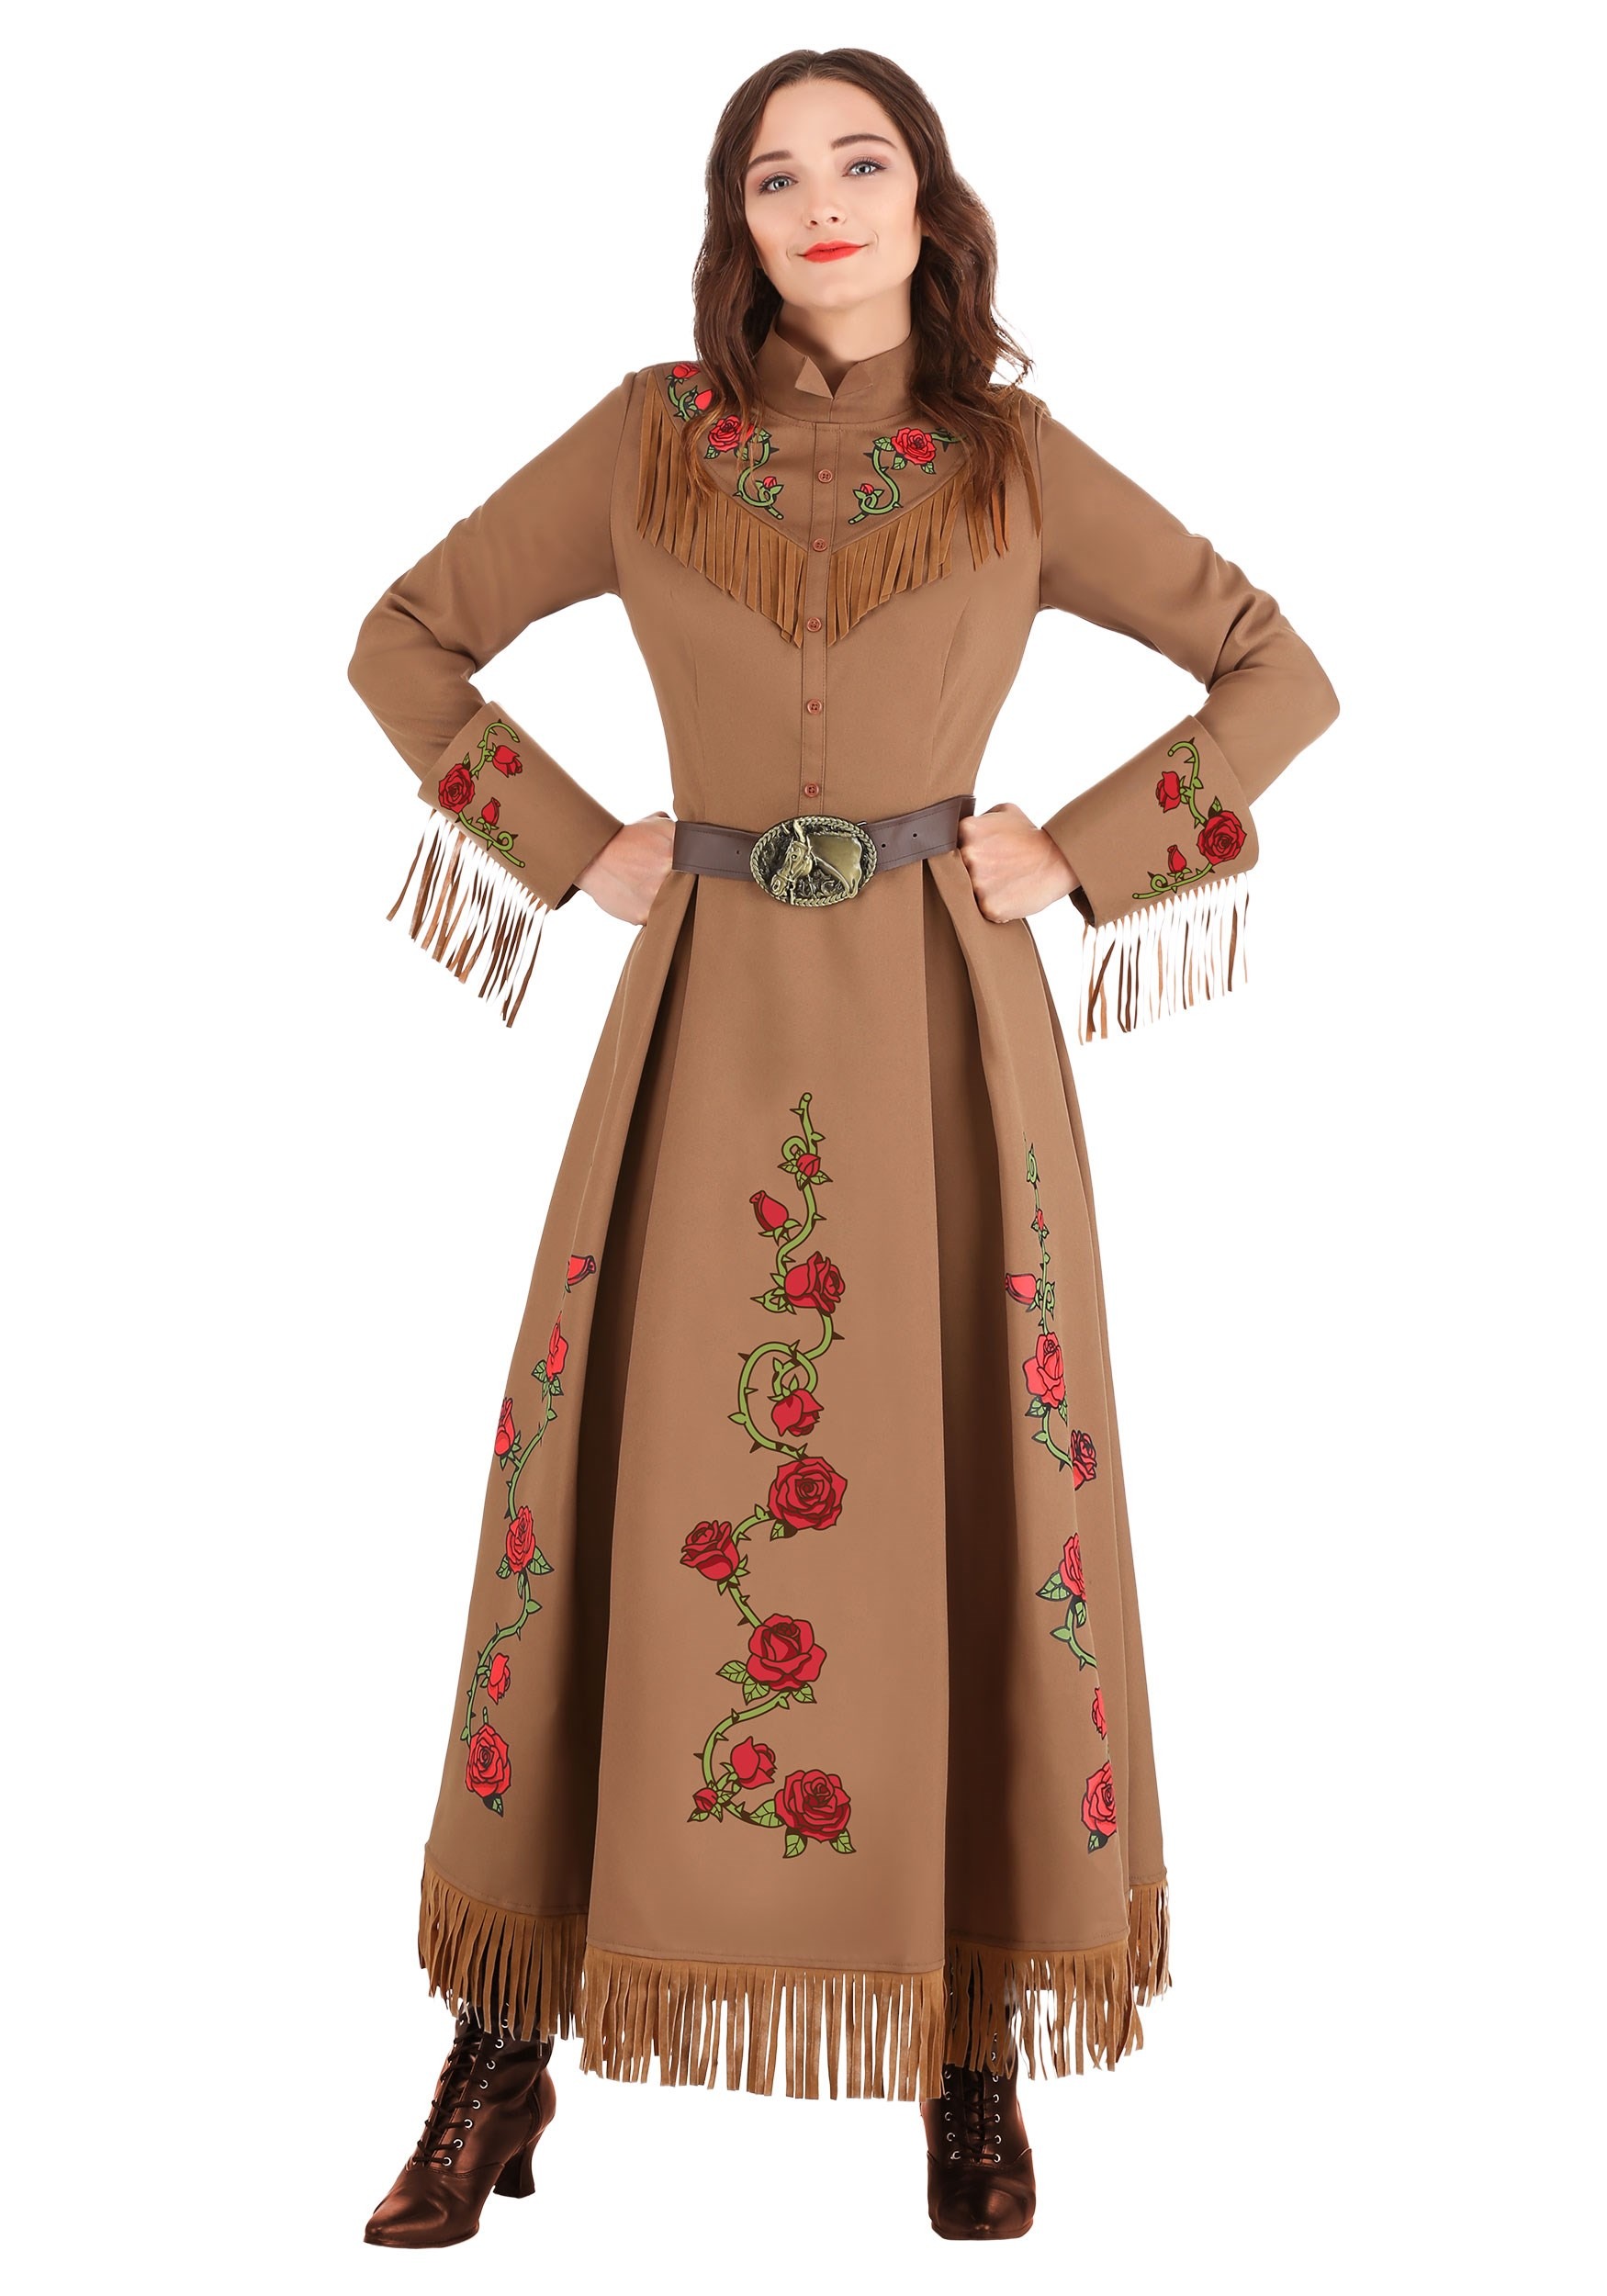 Annie Oakley Cowgirl Women's Fancy Dress Costume , Cowgirl Fancy Dress Costumes